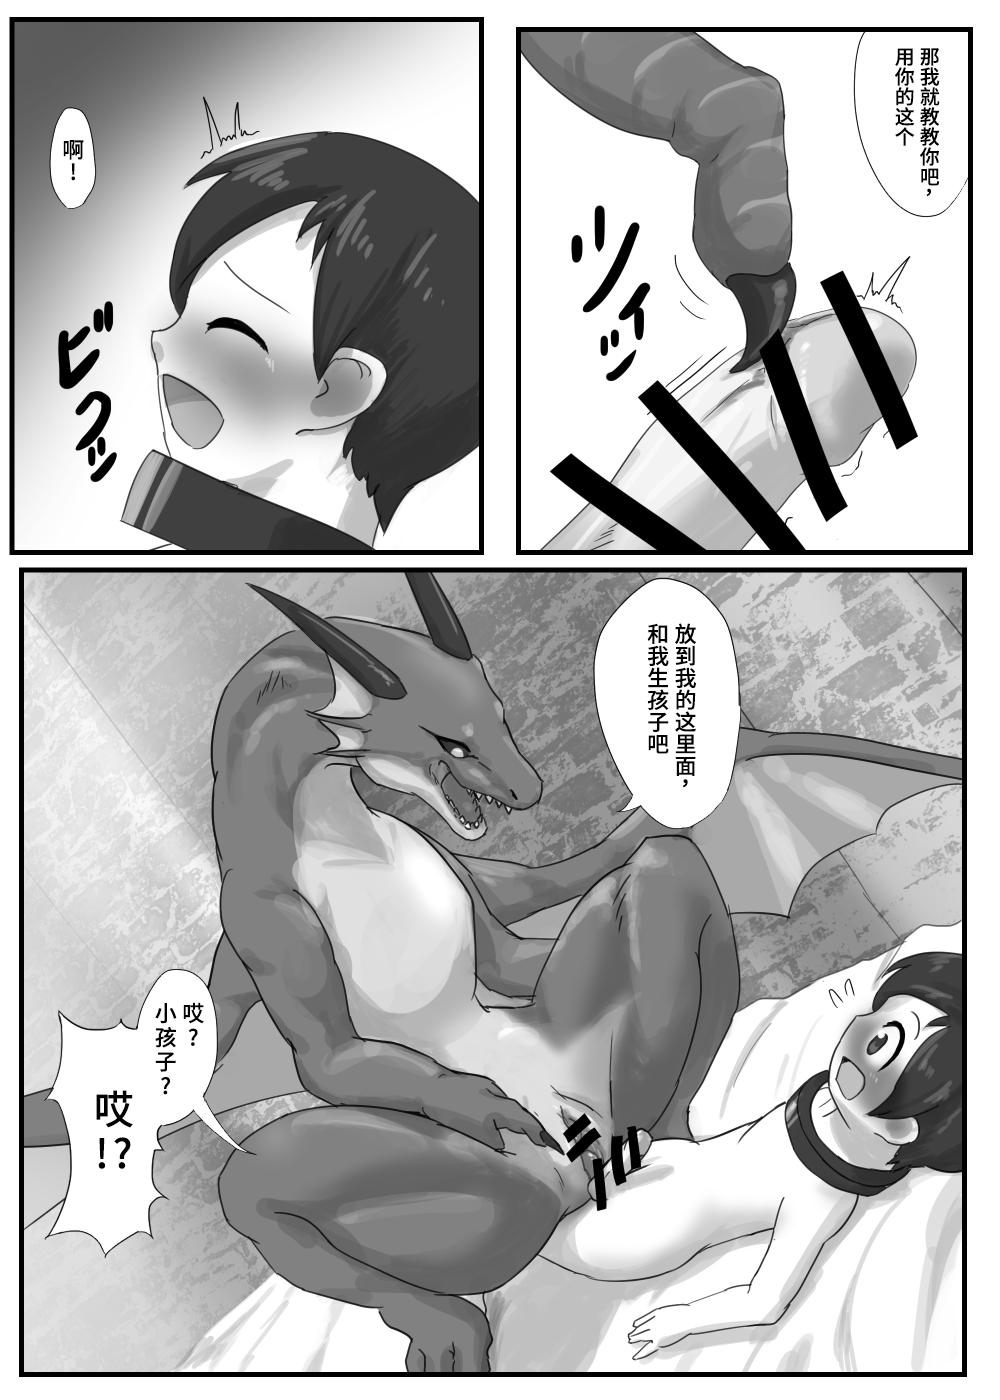 Gaping Dragon no Shita no Kuchi - Original Little - Page 8